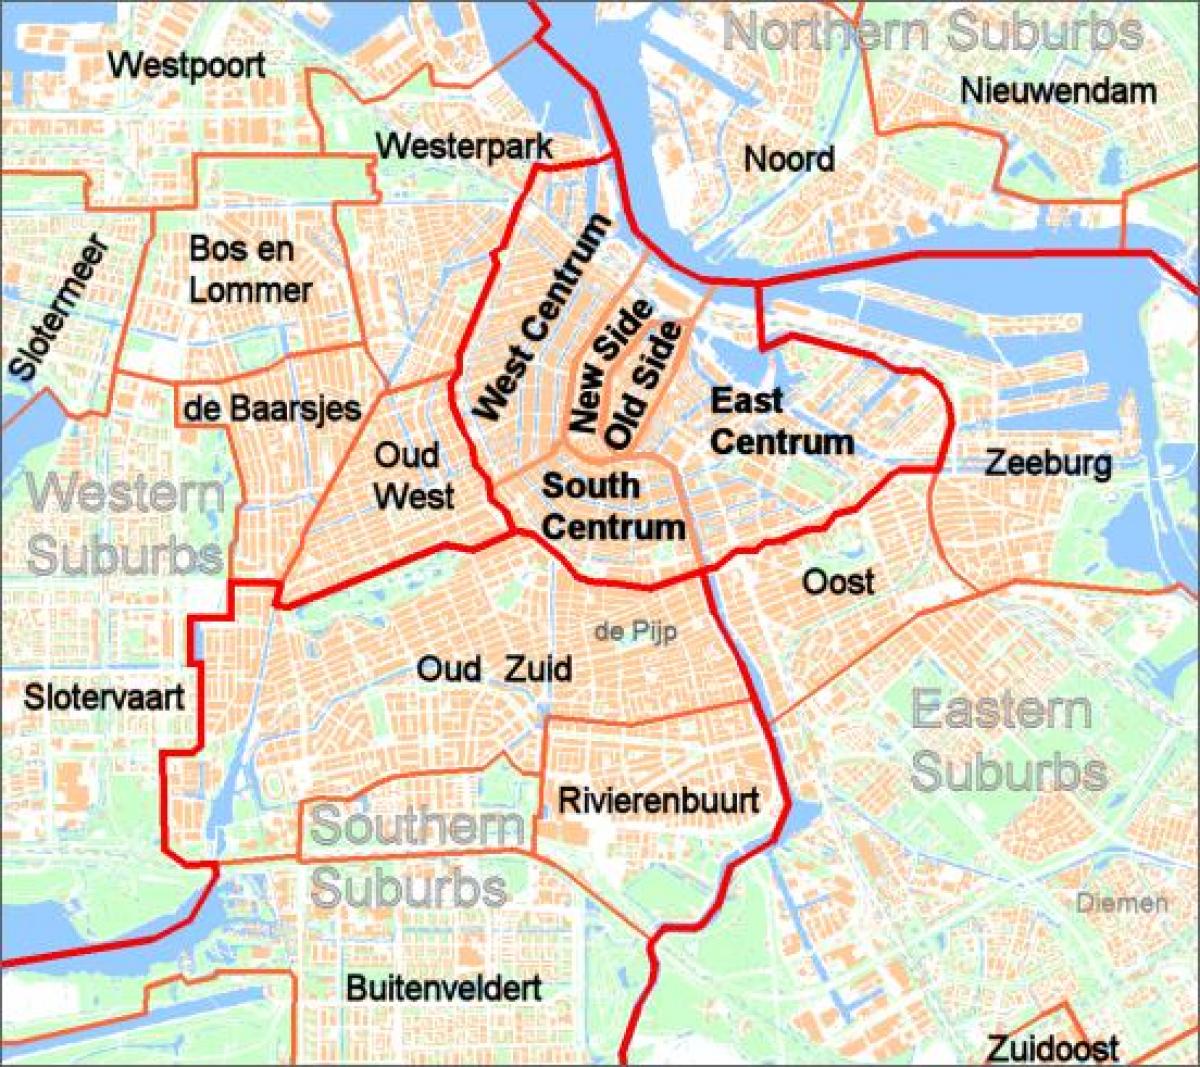 地图郊区的阿姆斯特丹